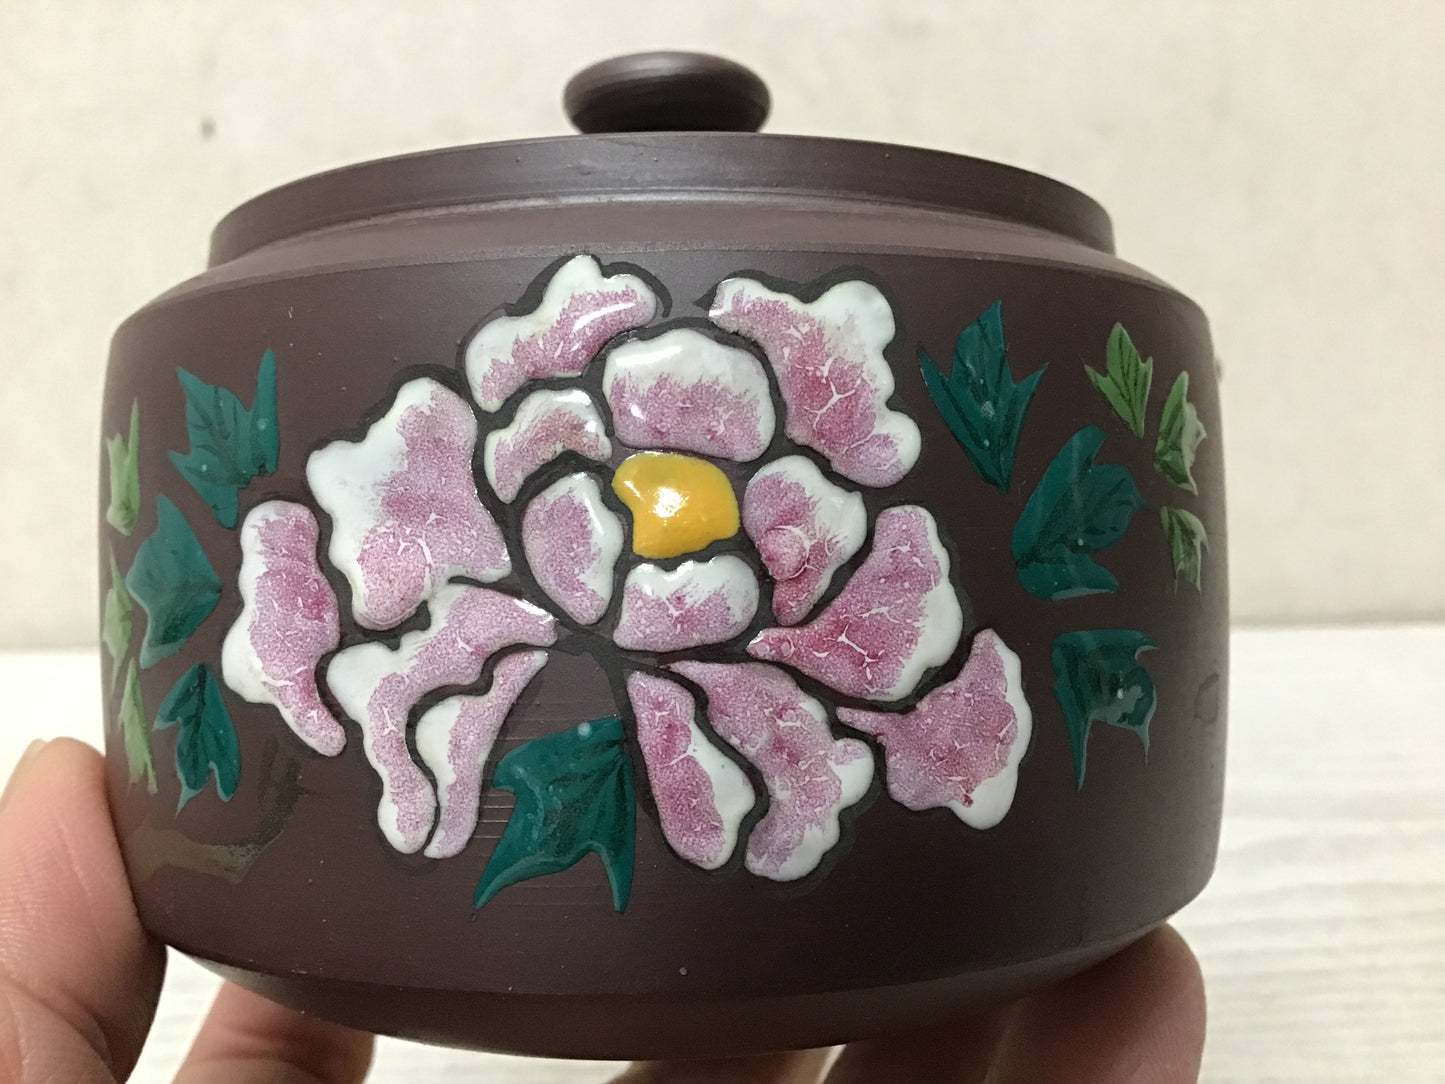 Y2826 KYUSU Banko-ware Teapot signed flower color Japan antique vintage tea pot